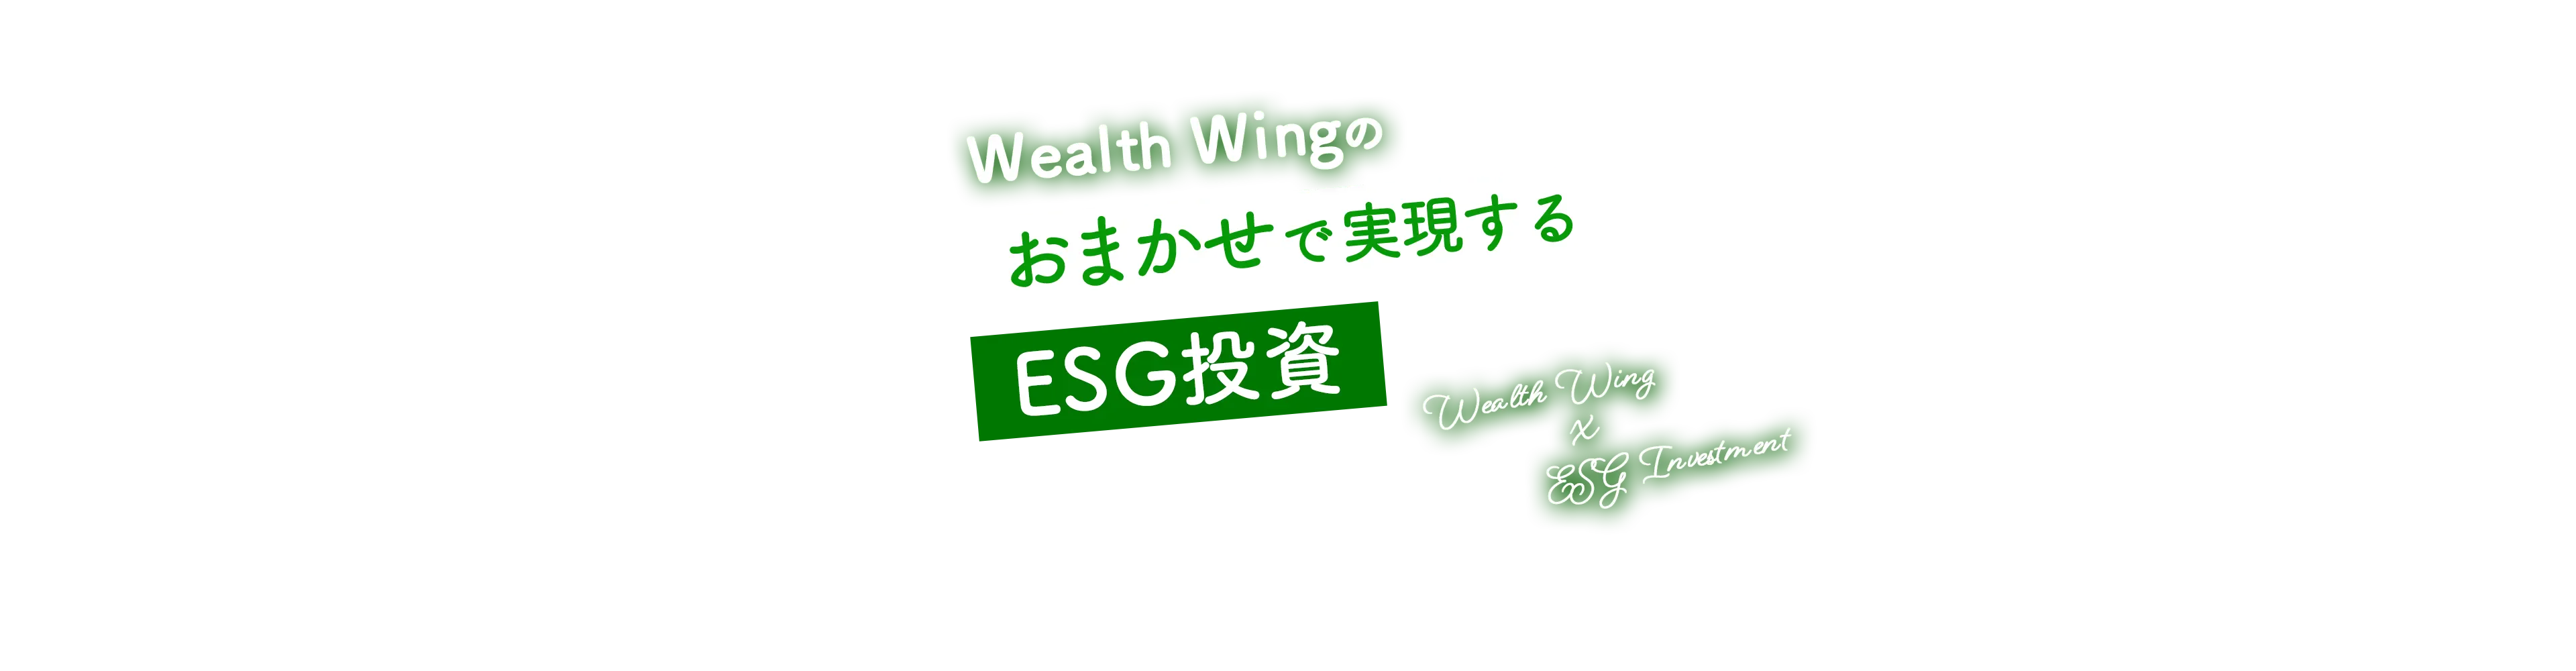 Wealth Wing(ウェルスウイング)のおまかせESG投資でSDGsの達成に寄与